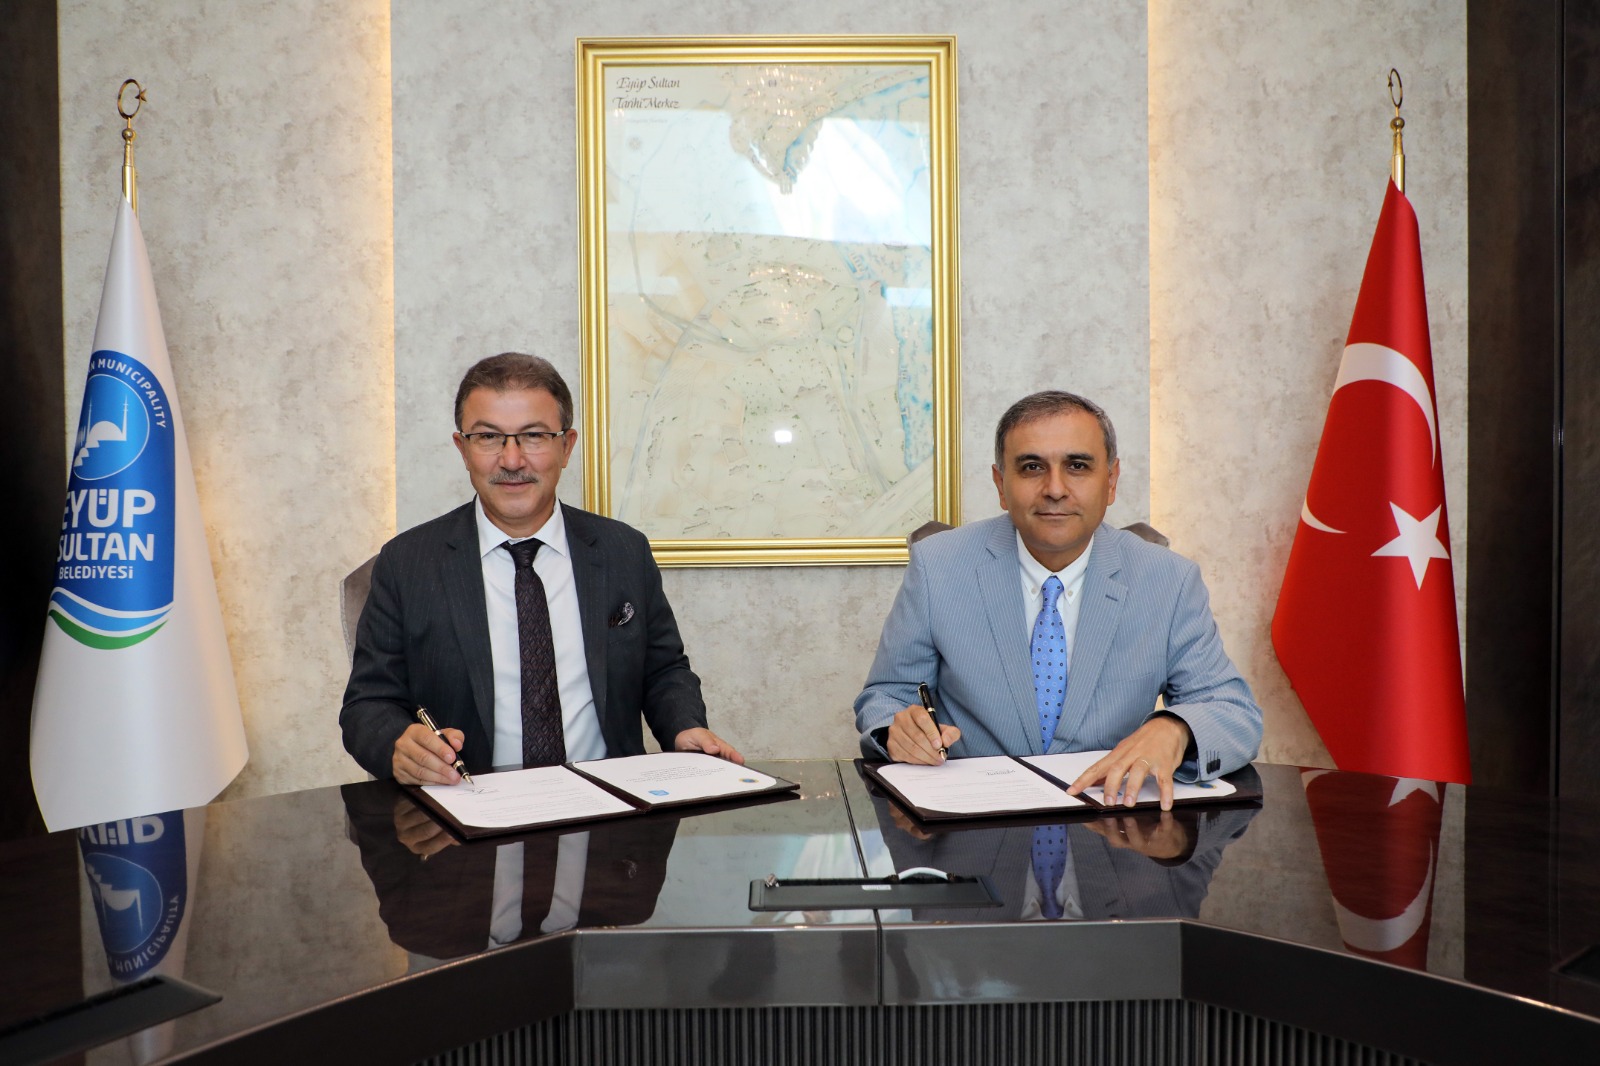 Eyüpsultan Belediyesi, Haliç Üniversitesi'yle protokol imzaladı